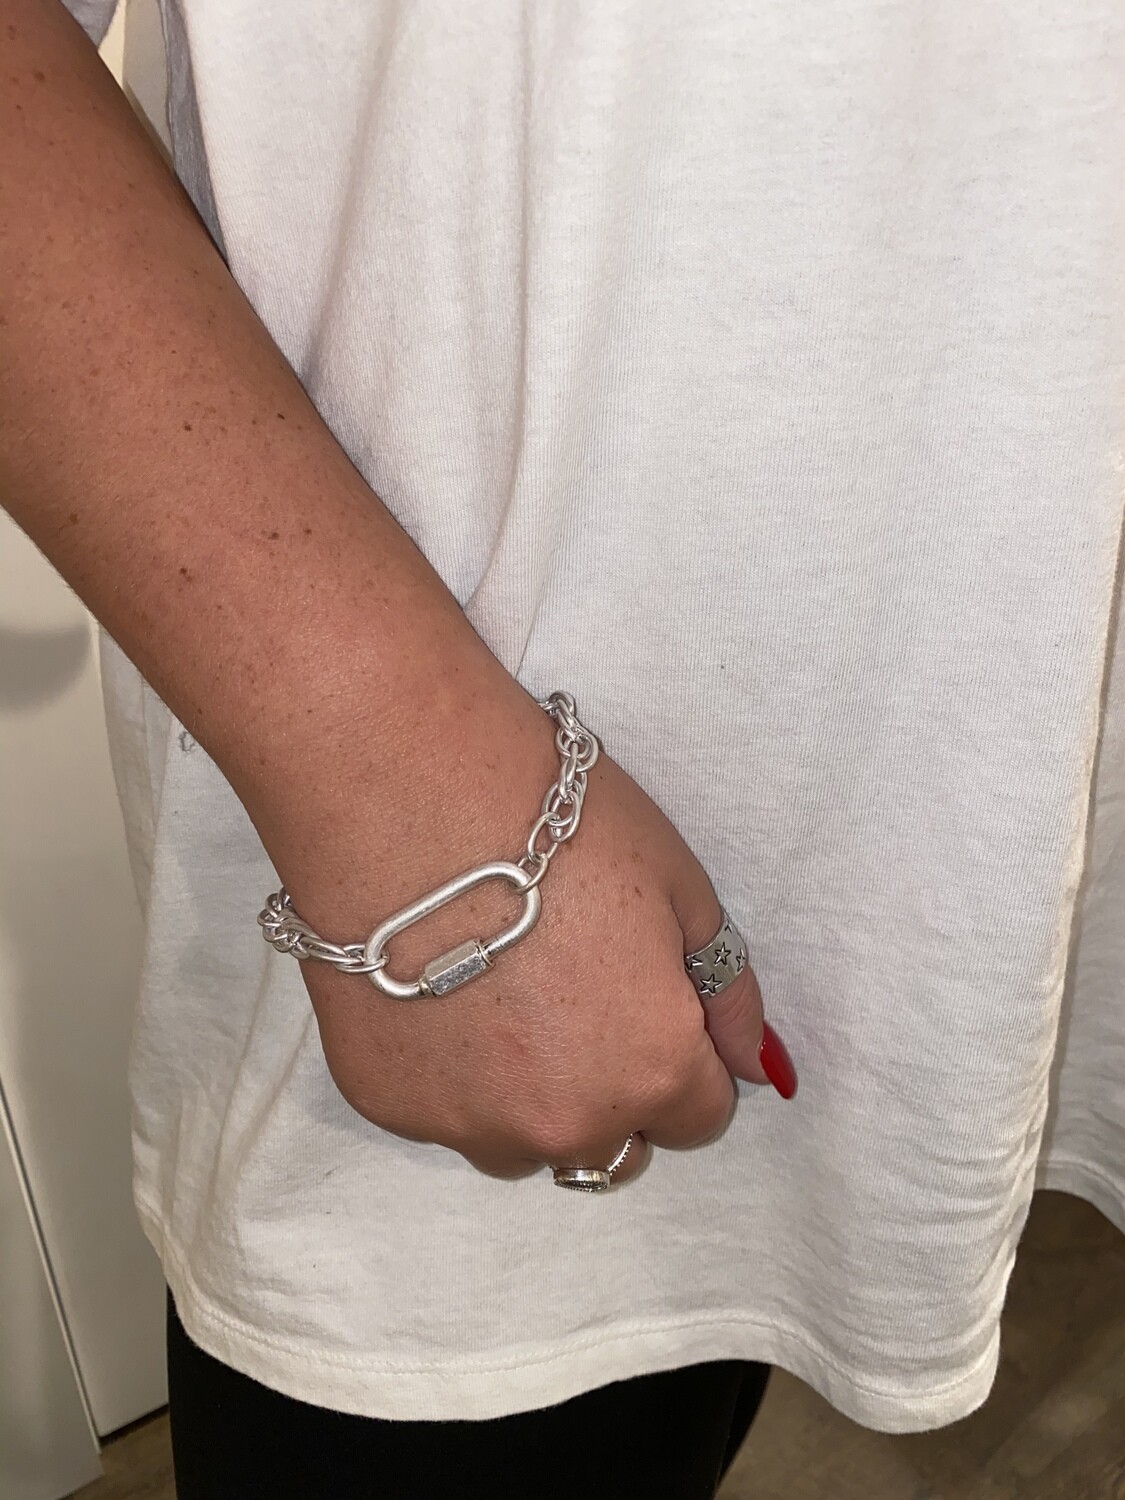 WH Chain w/Locket clasp bracelet